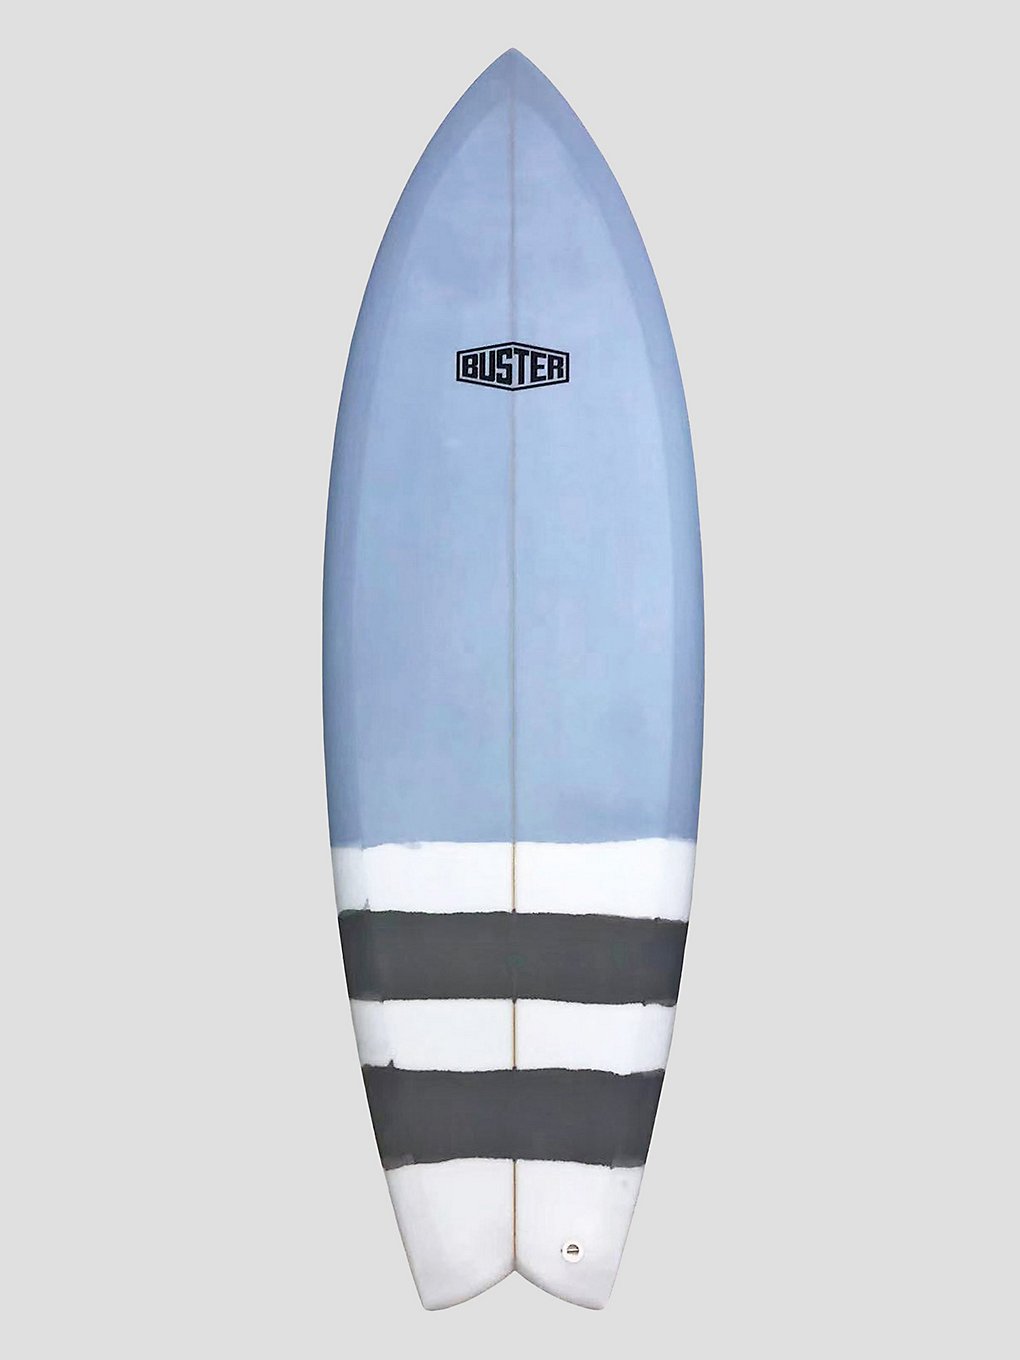 buster 510 quad fish surfboard grau blau/grau